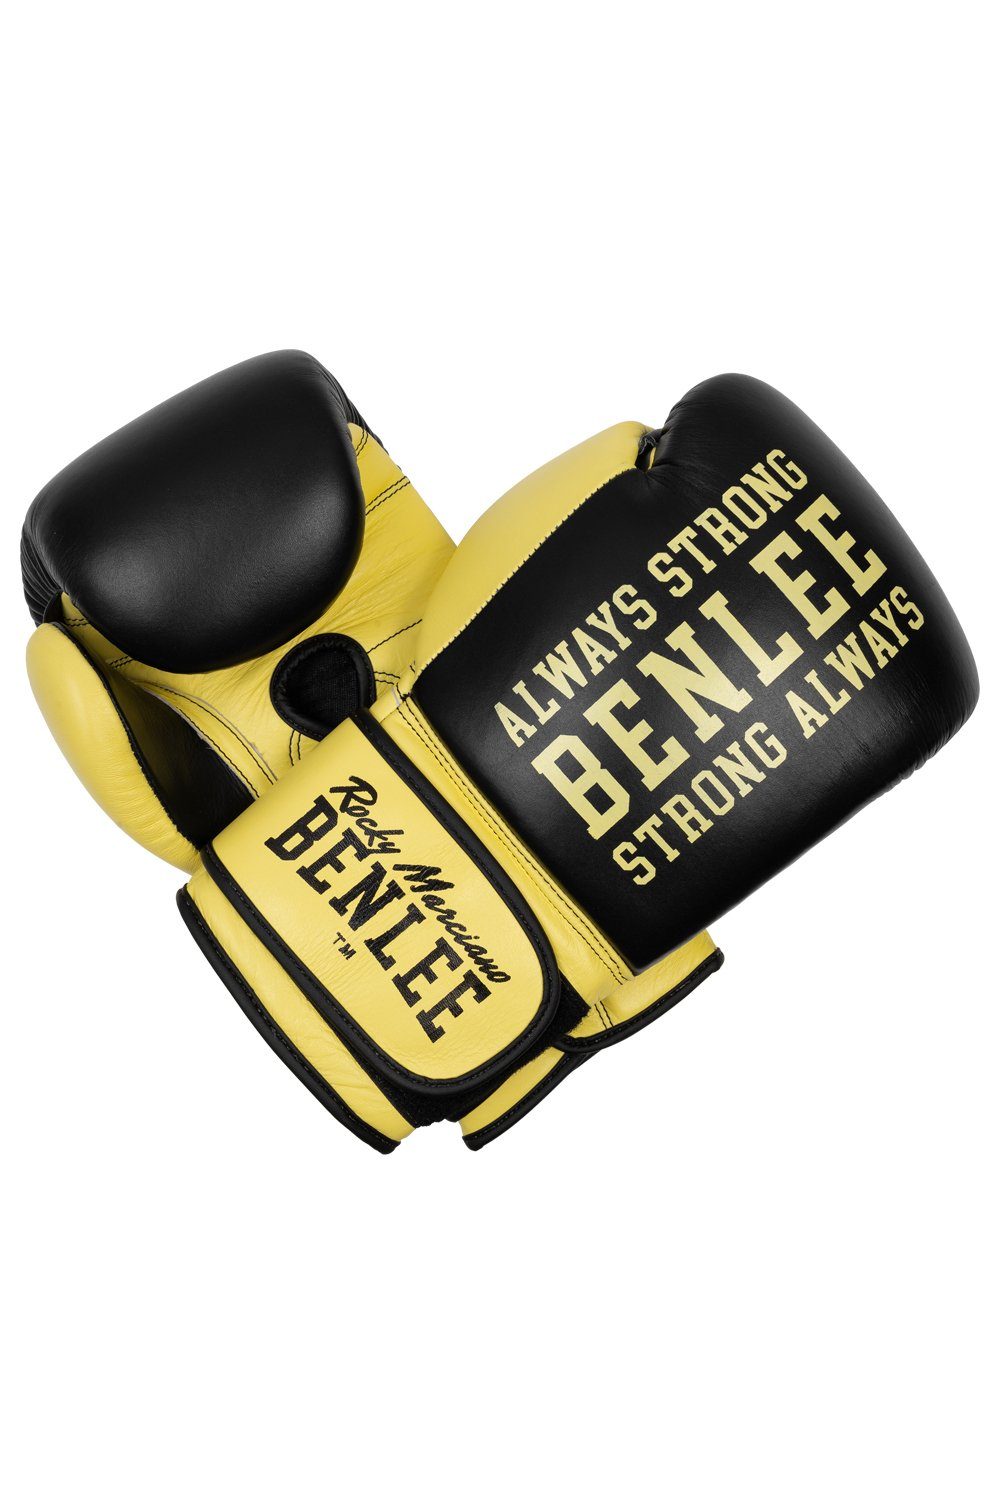 Benlee Rocky Marciano Boxhandschuhe Black/Yellow HARDWOOD